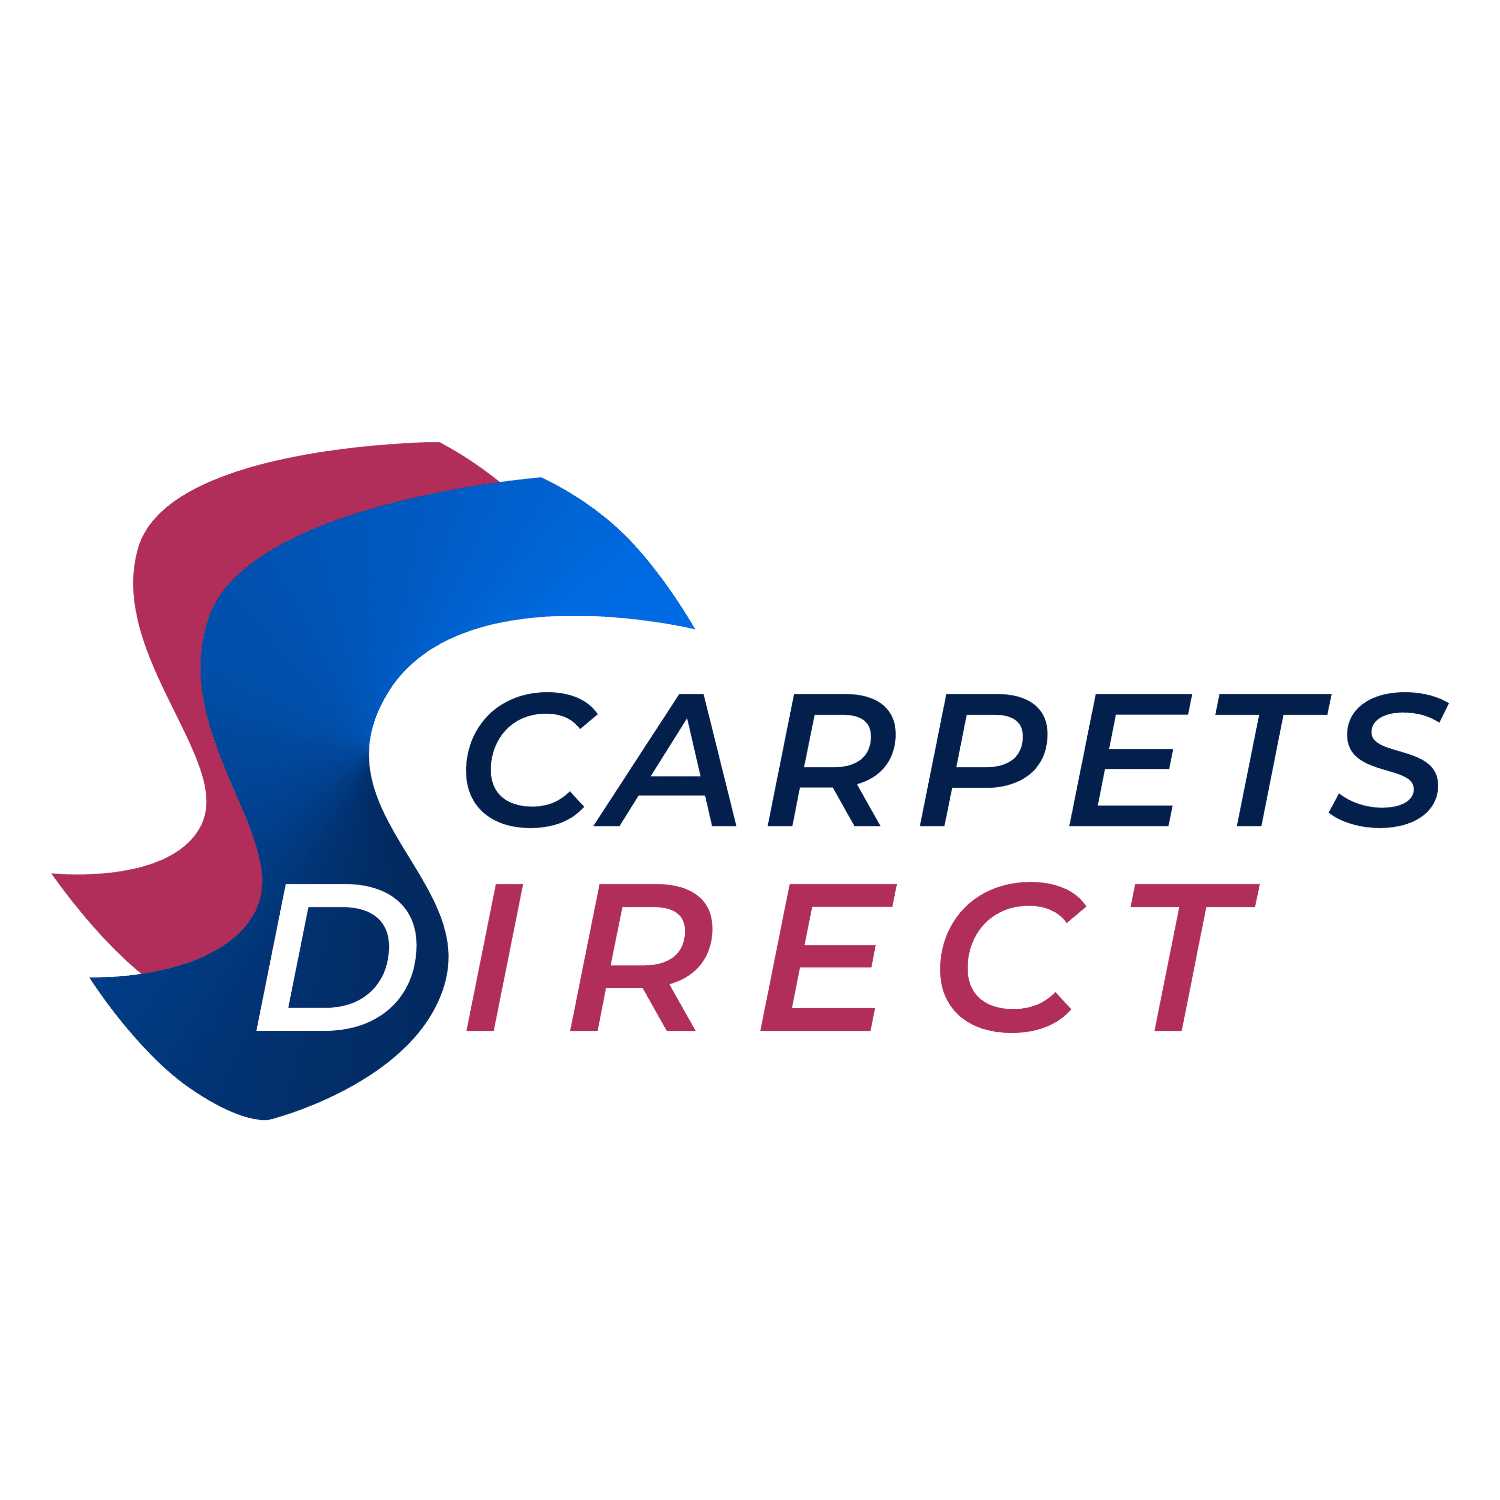 Carpets Direct - Plymouth, Devon PL2 3NJ - 01752 783351 | ShowMeLocal.com